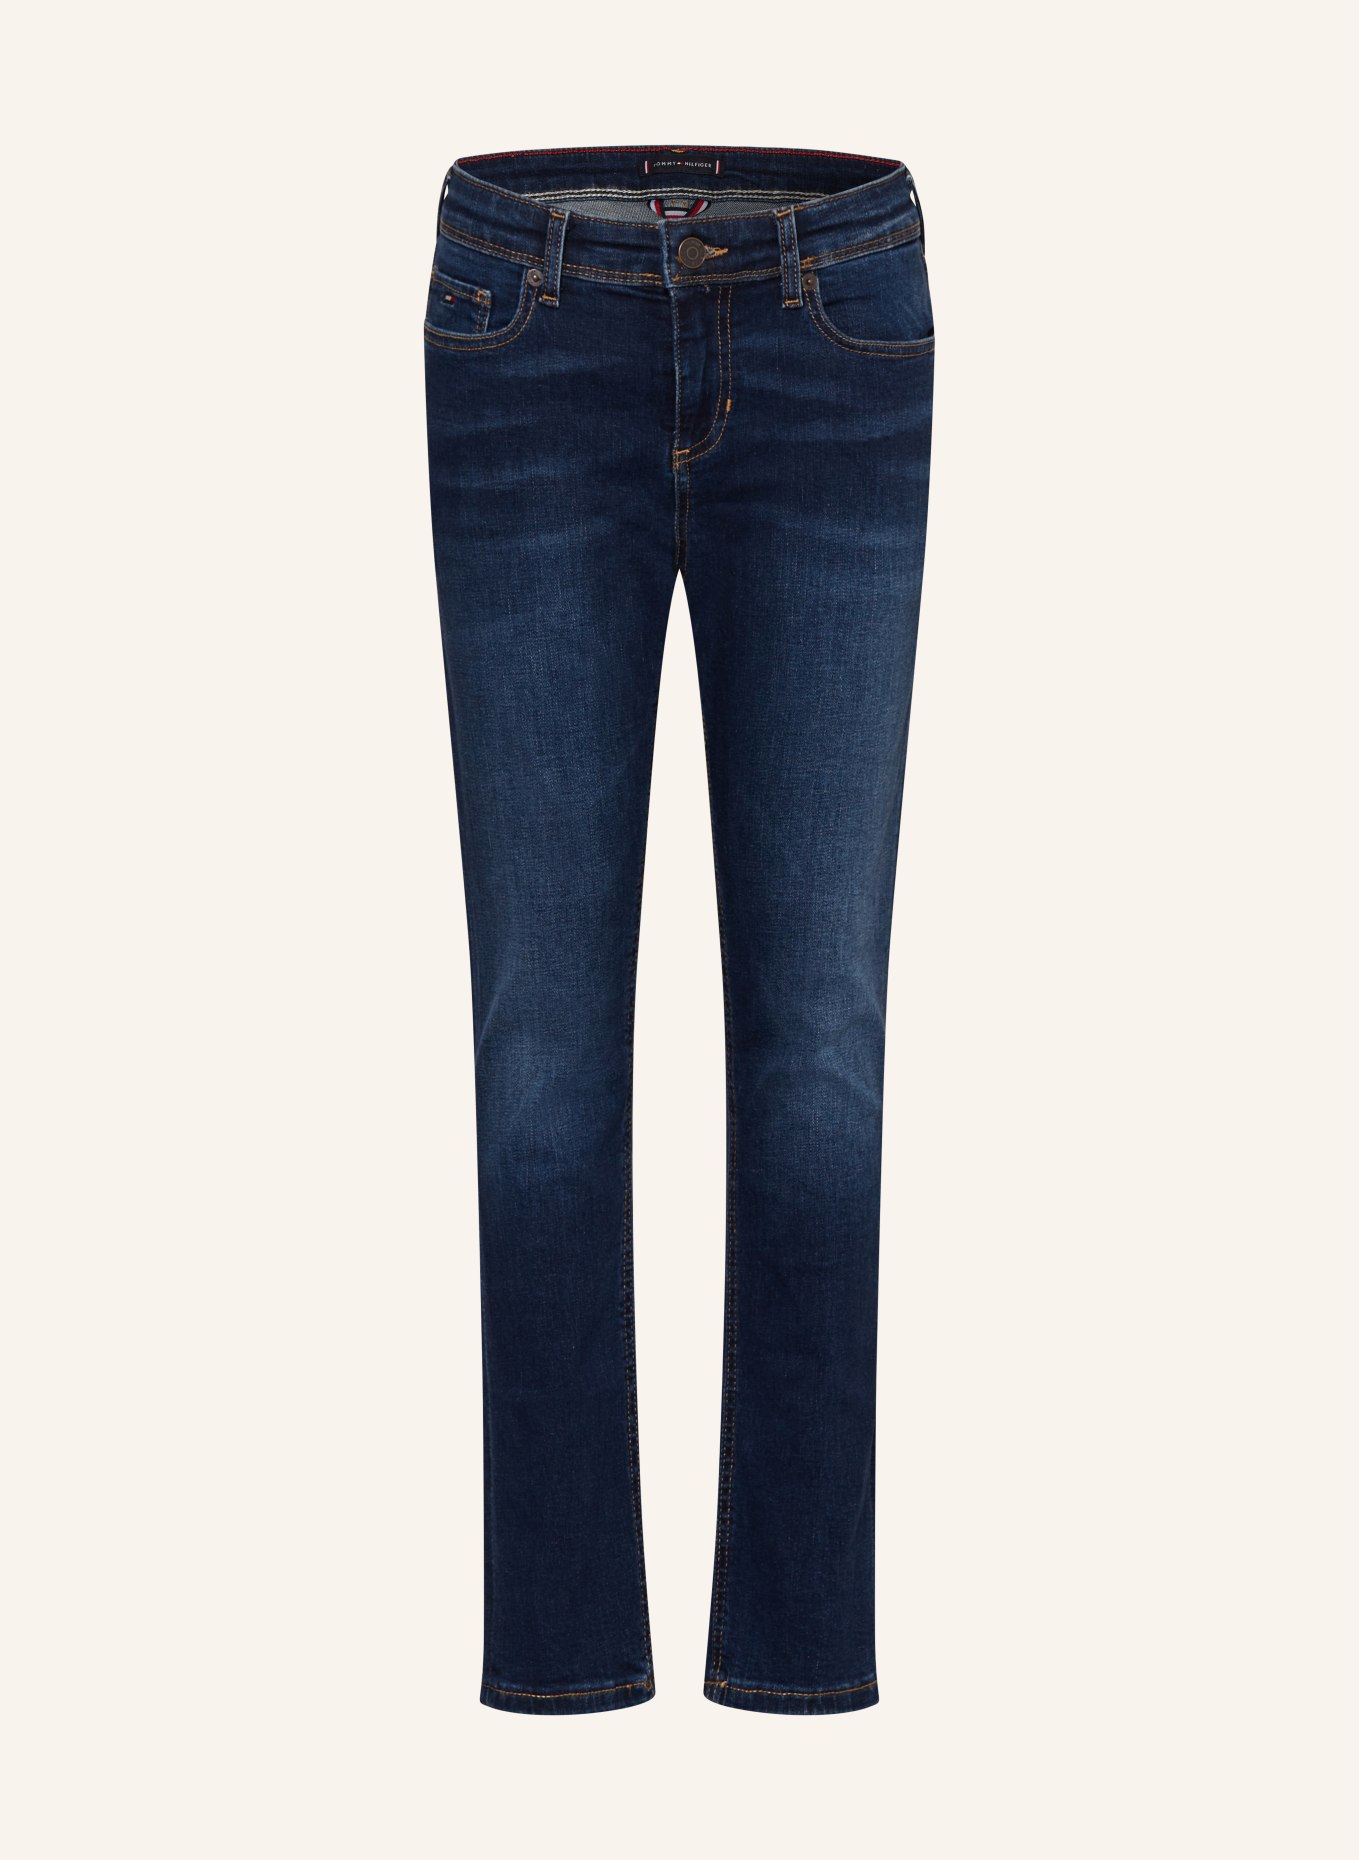 TOMMY HILFIGER Jeans Slim Fit, Farbe: 1BN Darkused (Bild 1)